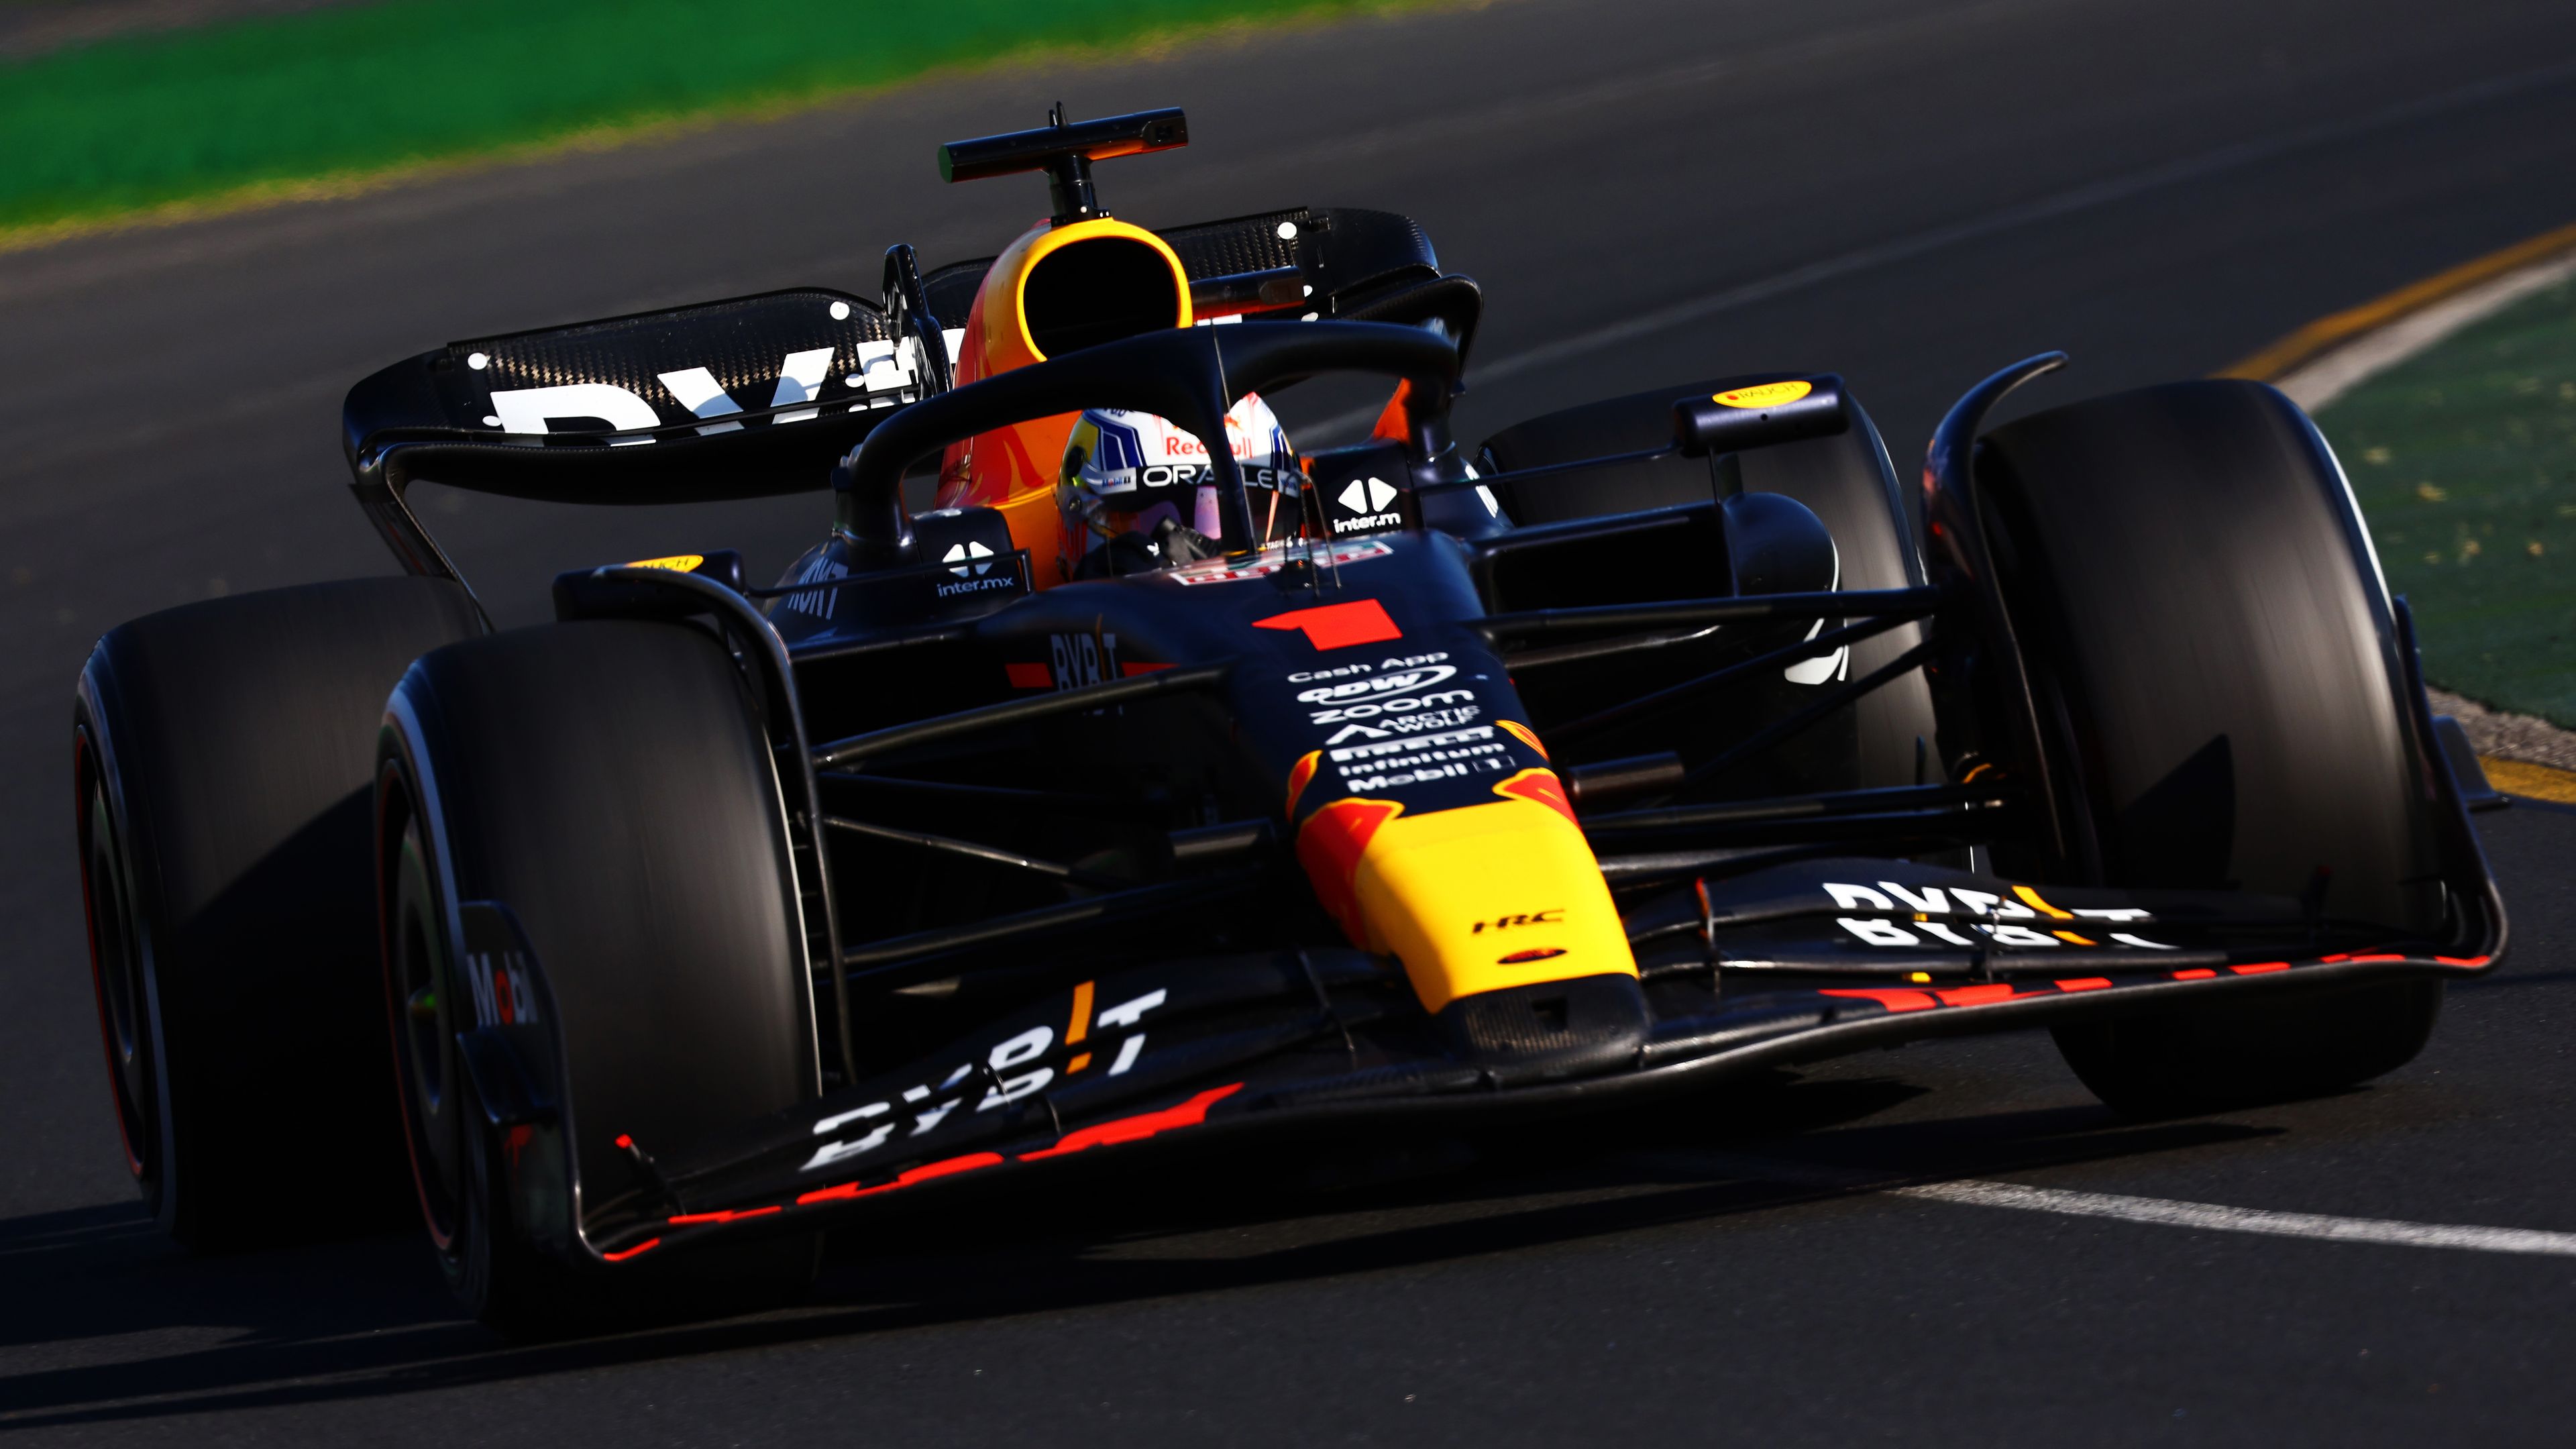 Max Verstappen won the Formula 1 Australian Grand Prix for Red Bull.